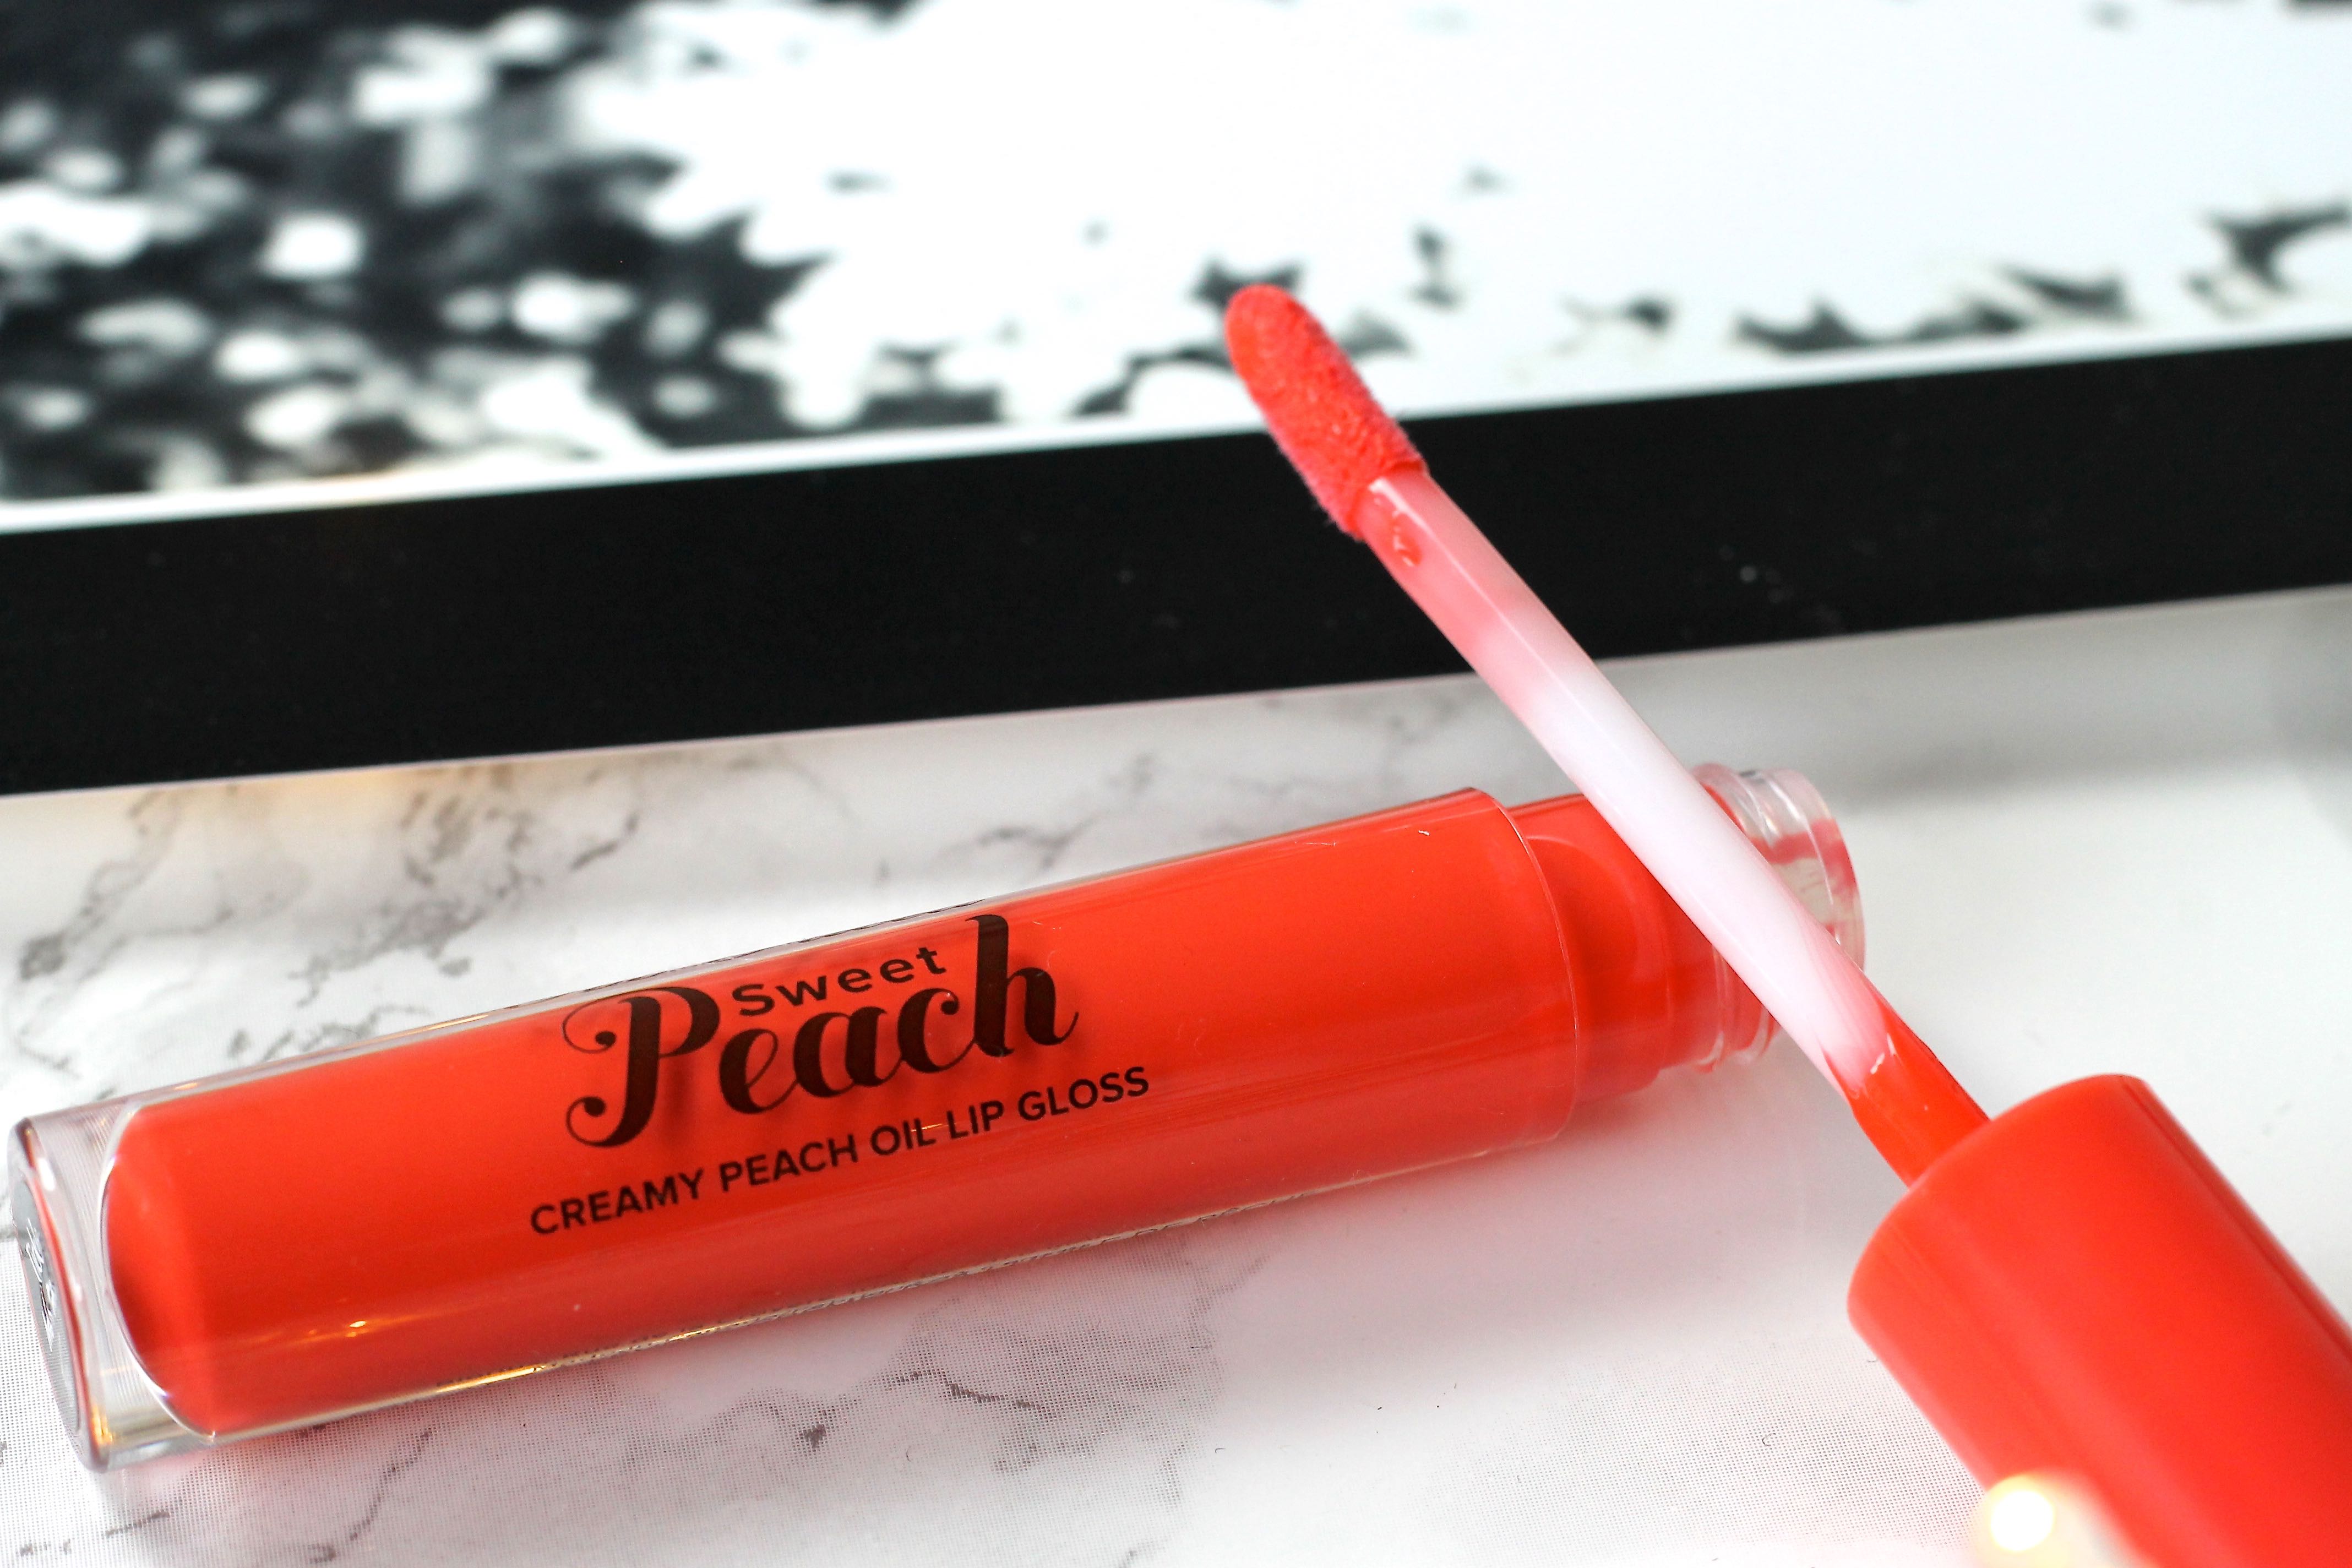 Sweet Peach Creamy Peach Oil Lip Gloss review